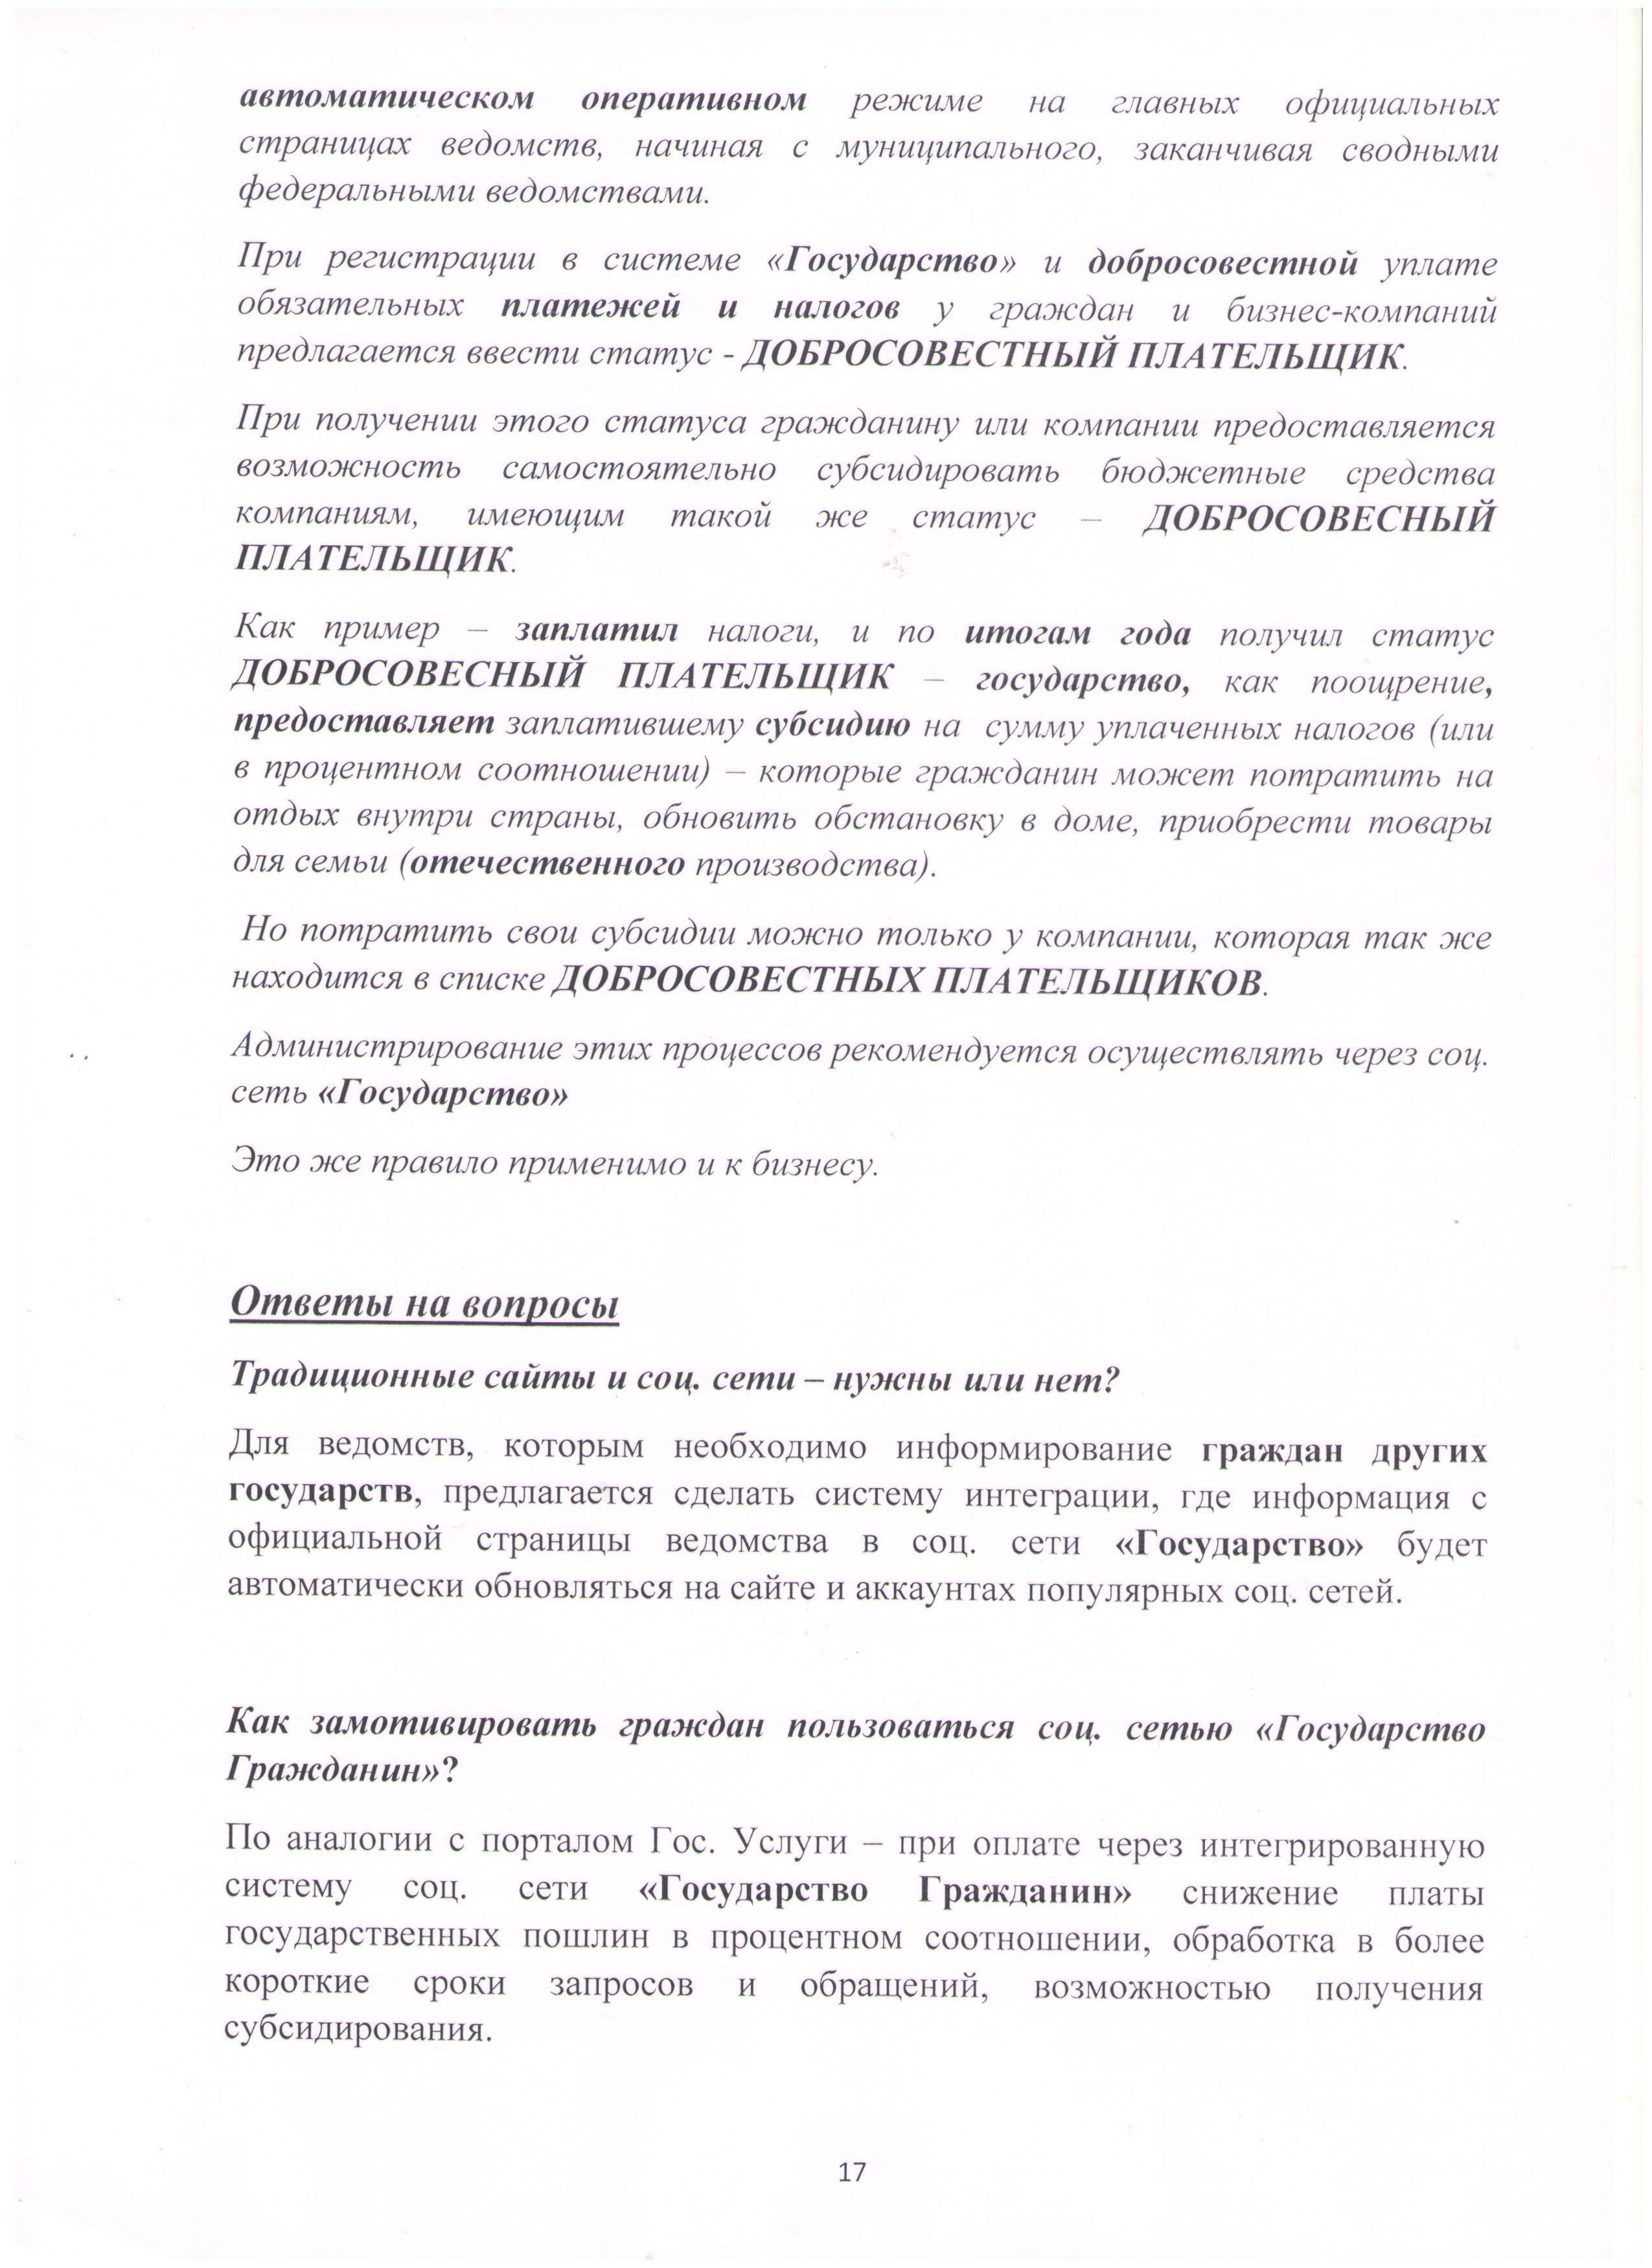 Открытое письмо Президенту РФ Лист 17